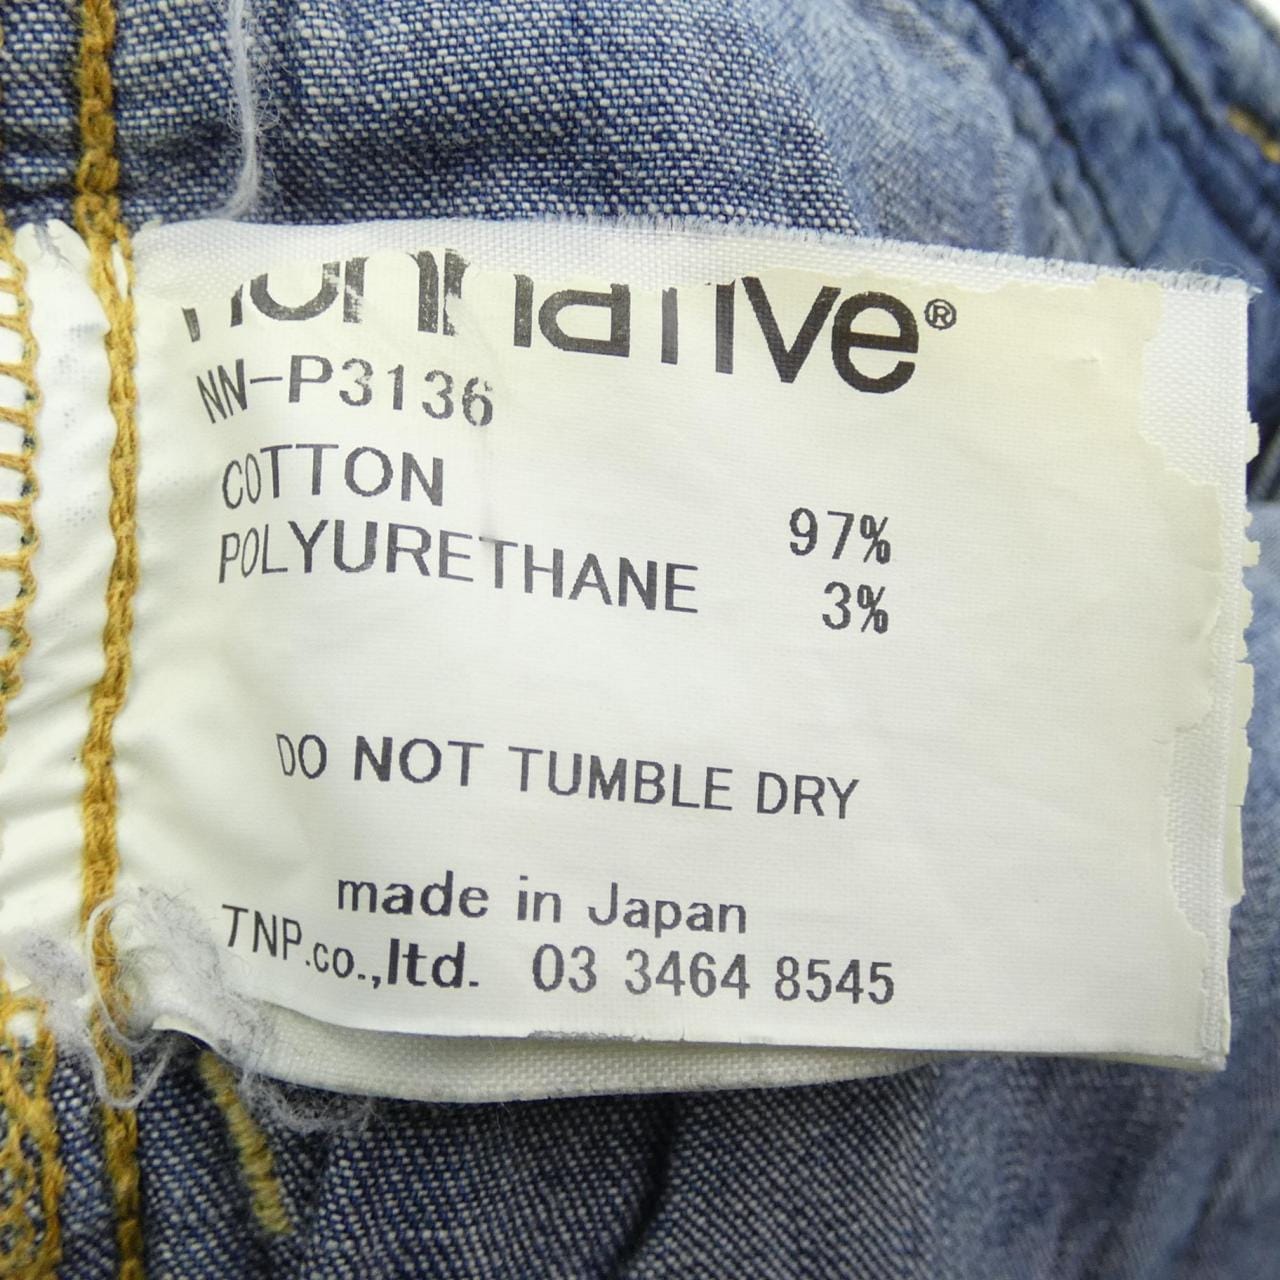 Nonnative NONNATIVE jeans